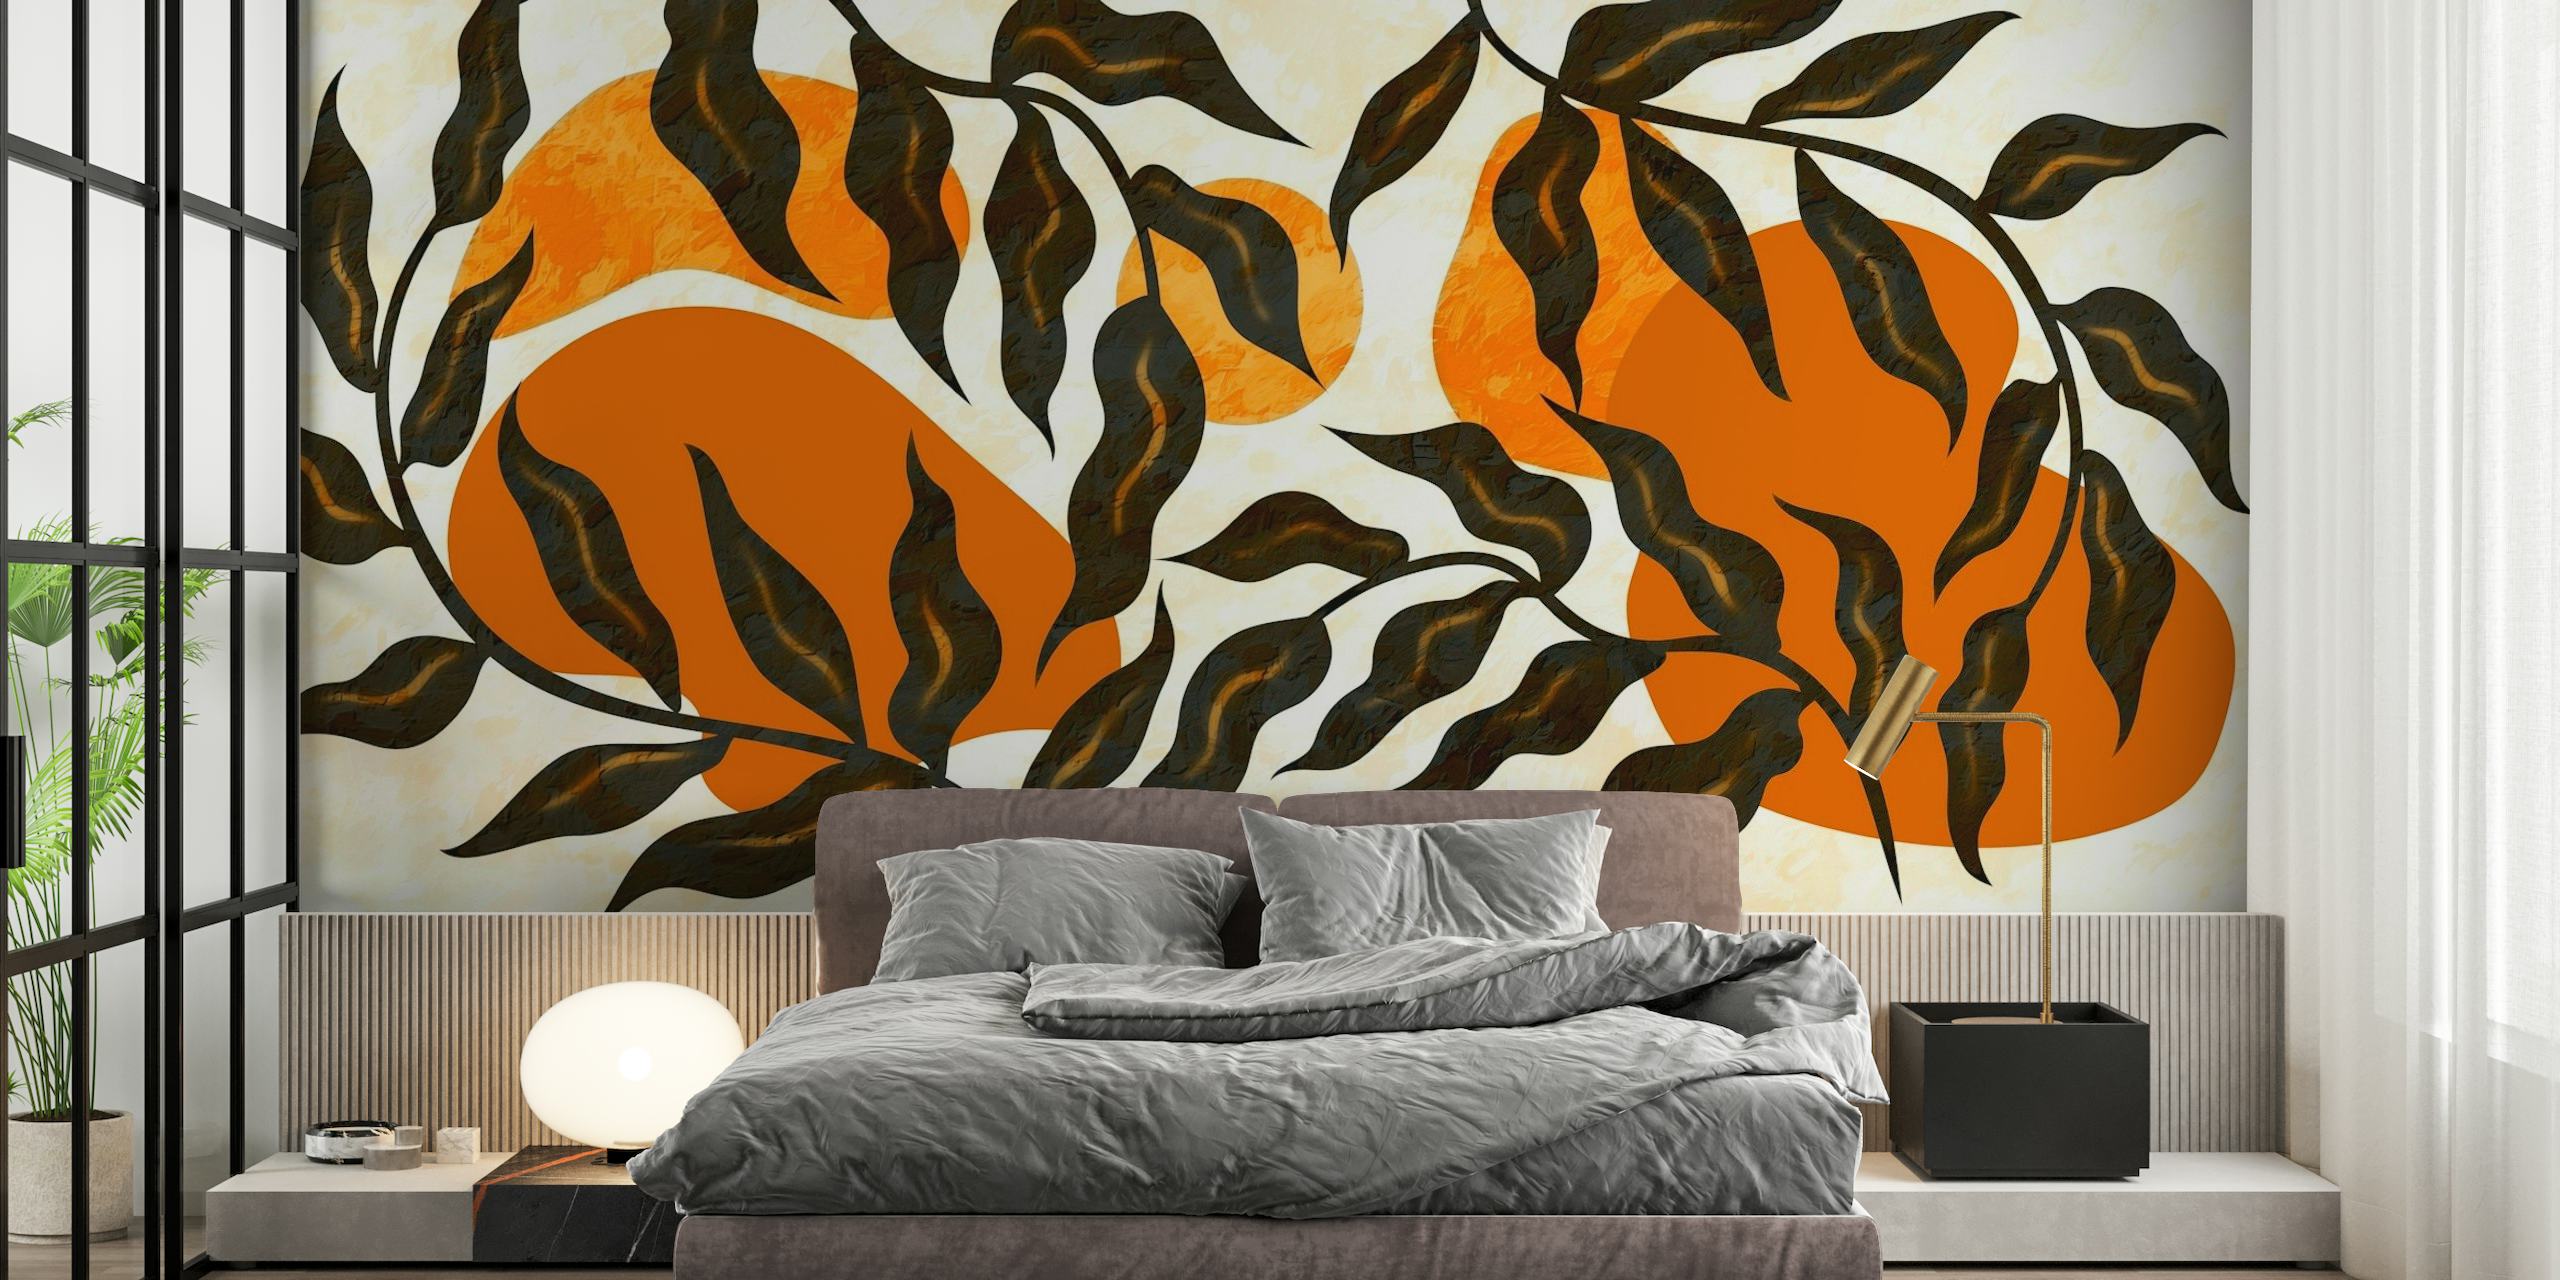 Mural de parede Sunrise Luxury Leaves com damasco quente e padrões botânicos pretos